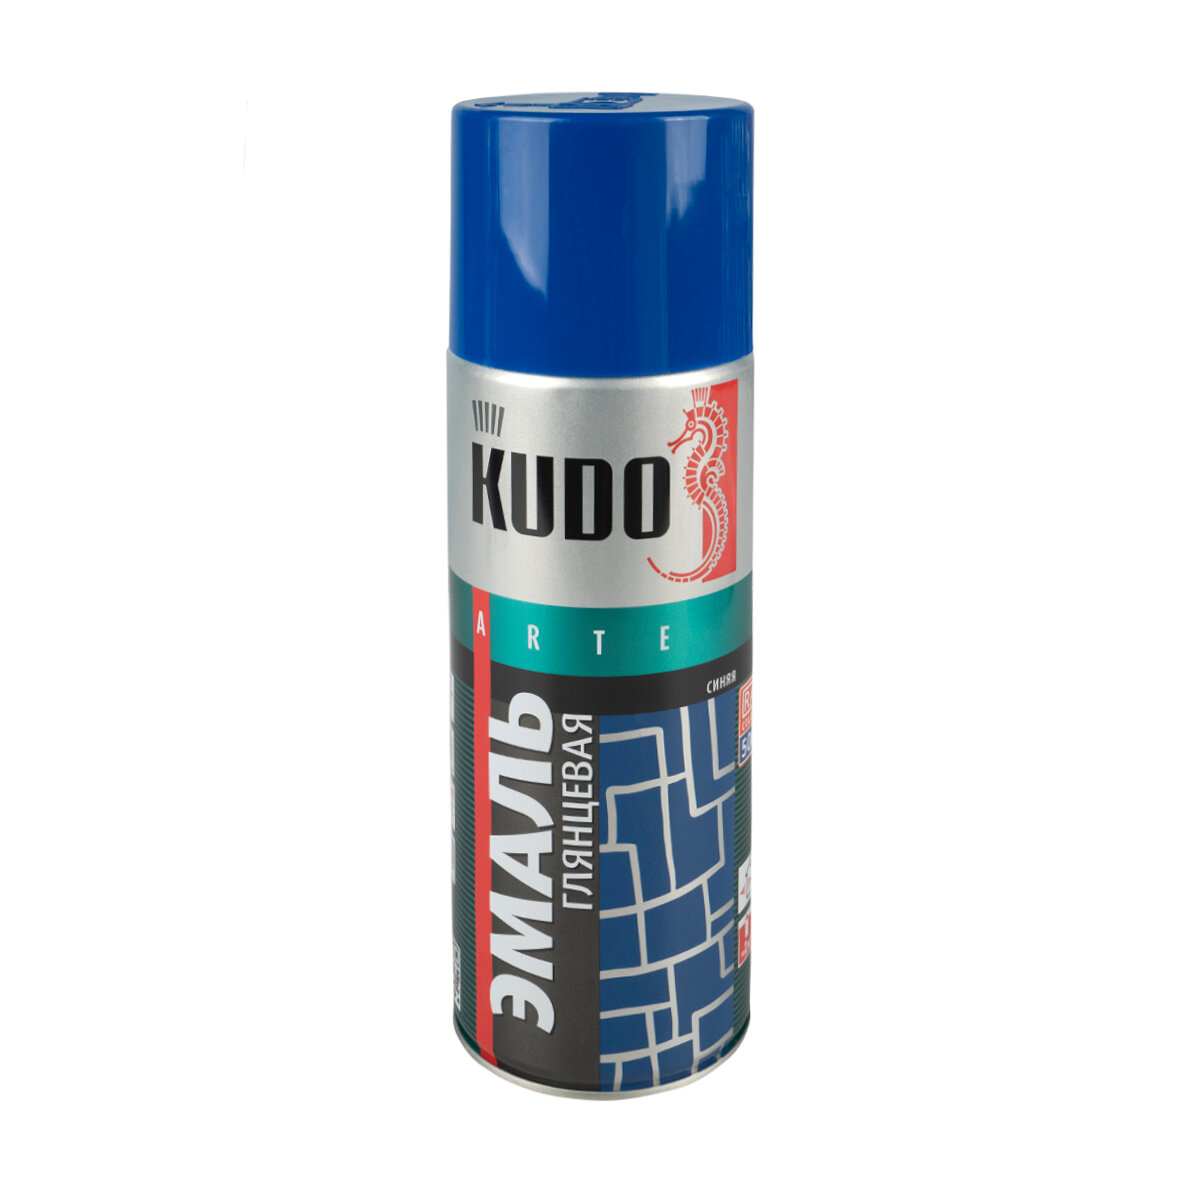 Аэрозольная алкидная краска Kudo KU-1011, 520 мл, синяя